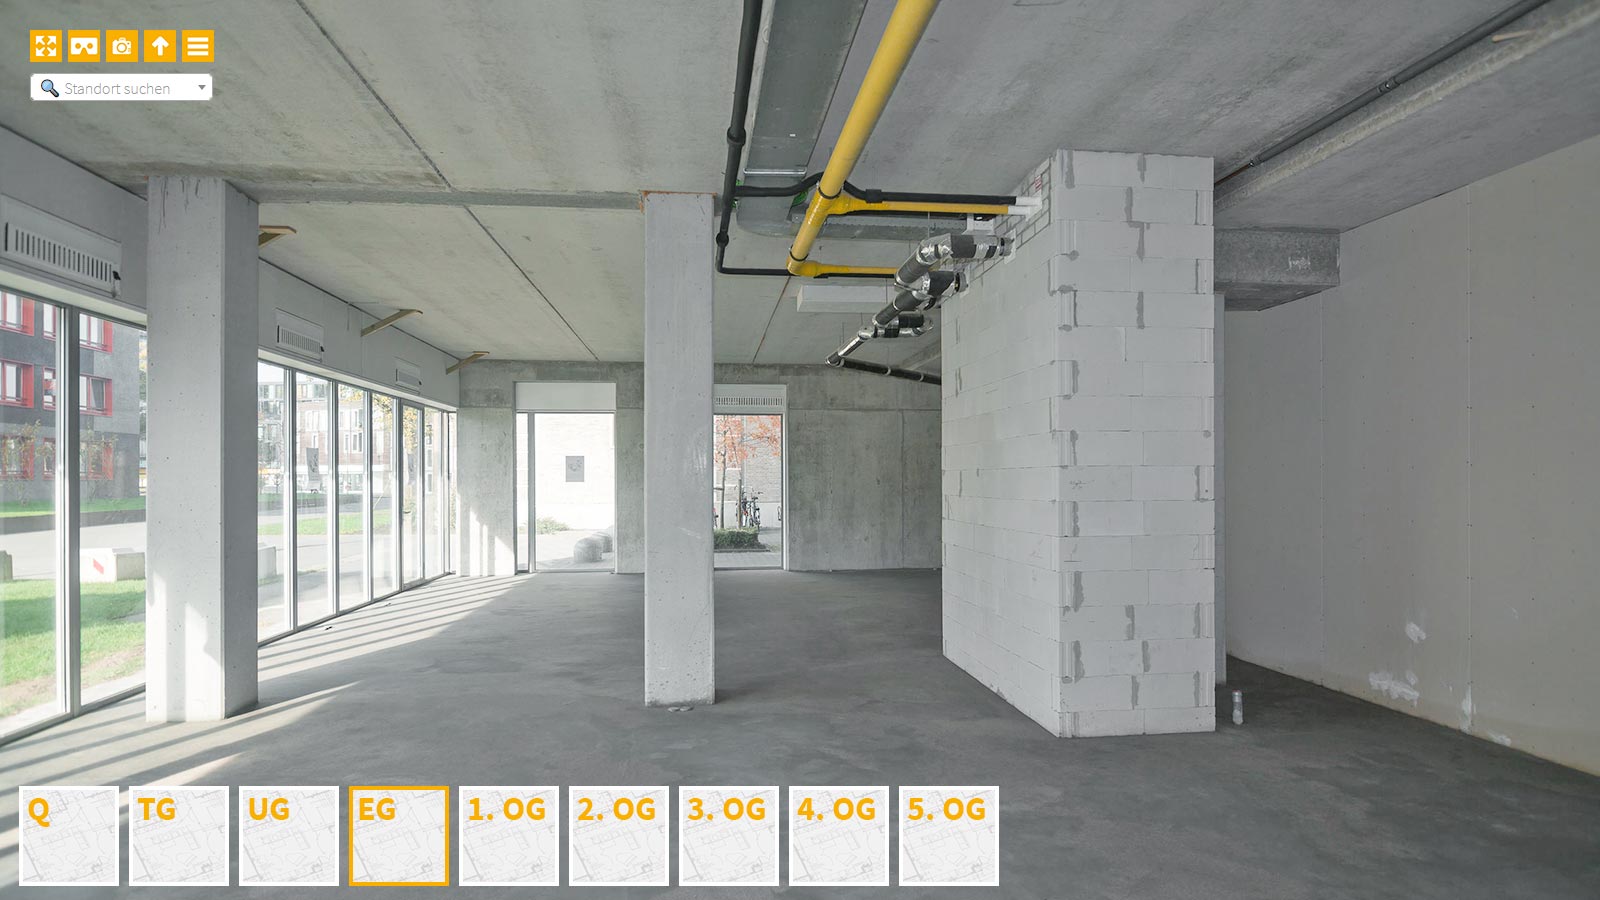 Baudokumentation 360 Grad bei gestörten Projekten in 


	


	


	


	


	


	


	


	


	


	Stuttgart









, Bilddokumentation als virtueller Rundgang